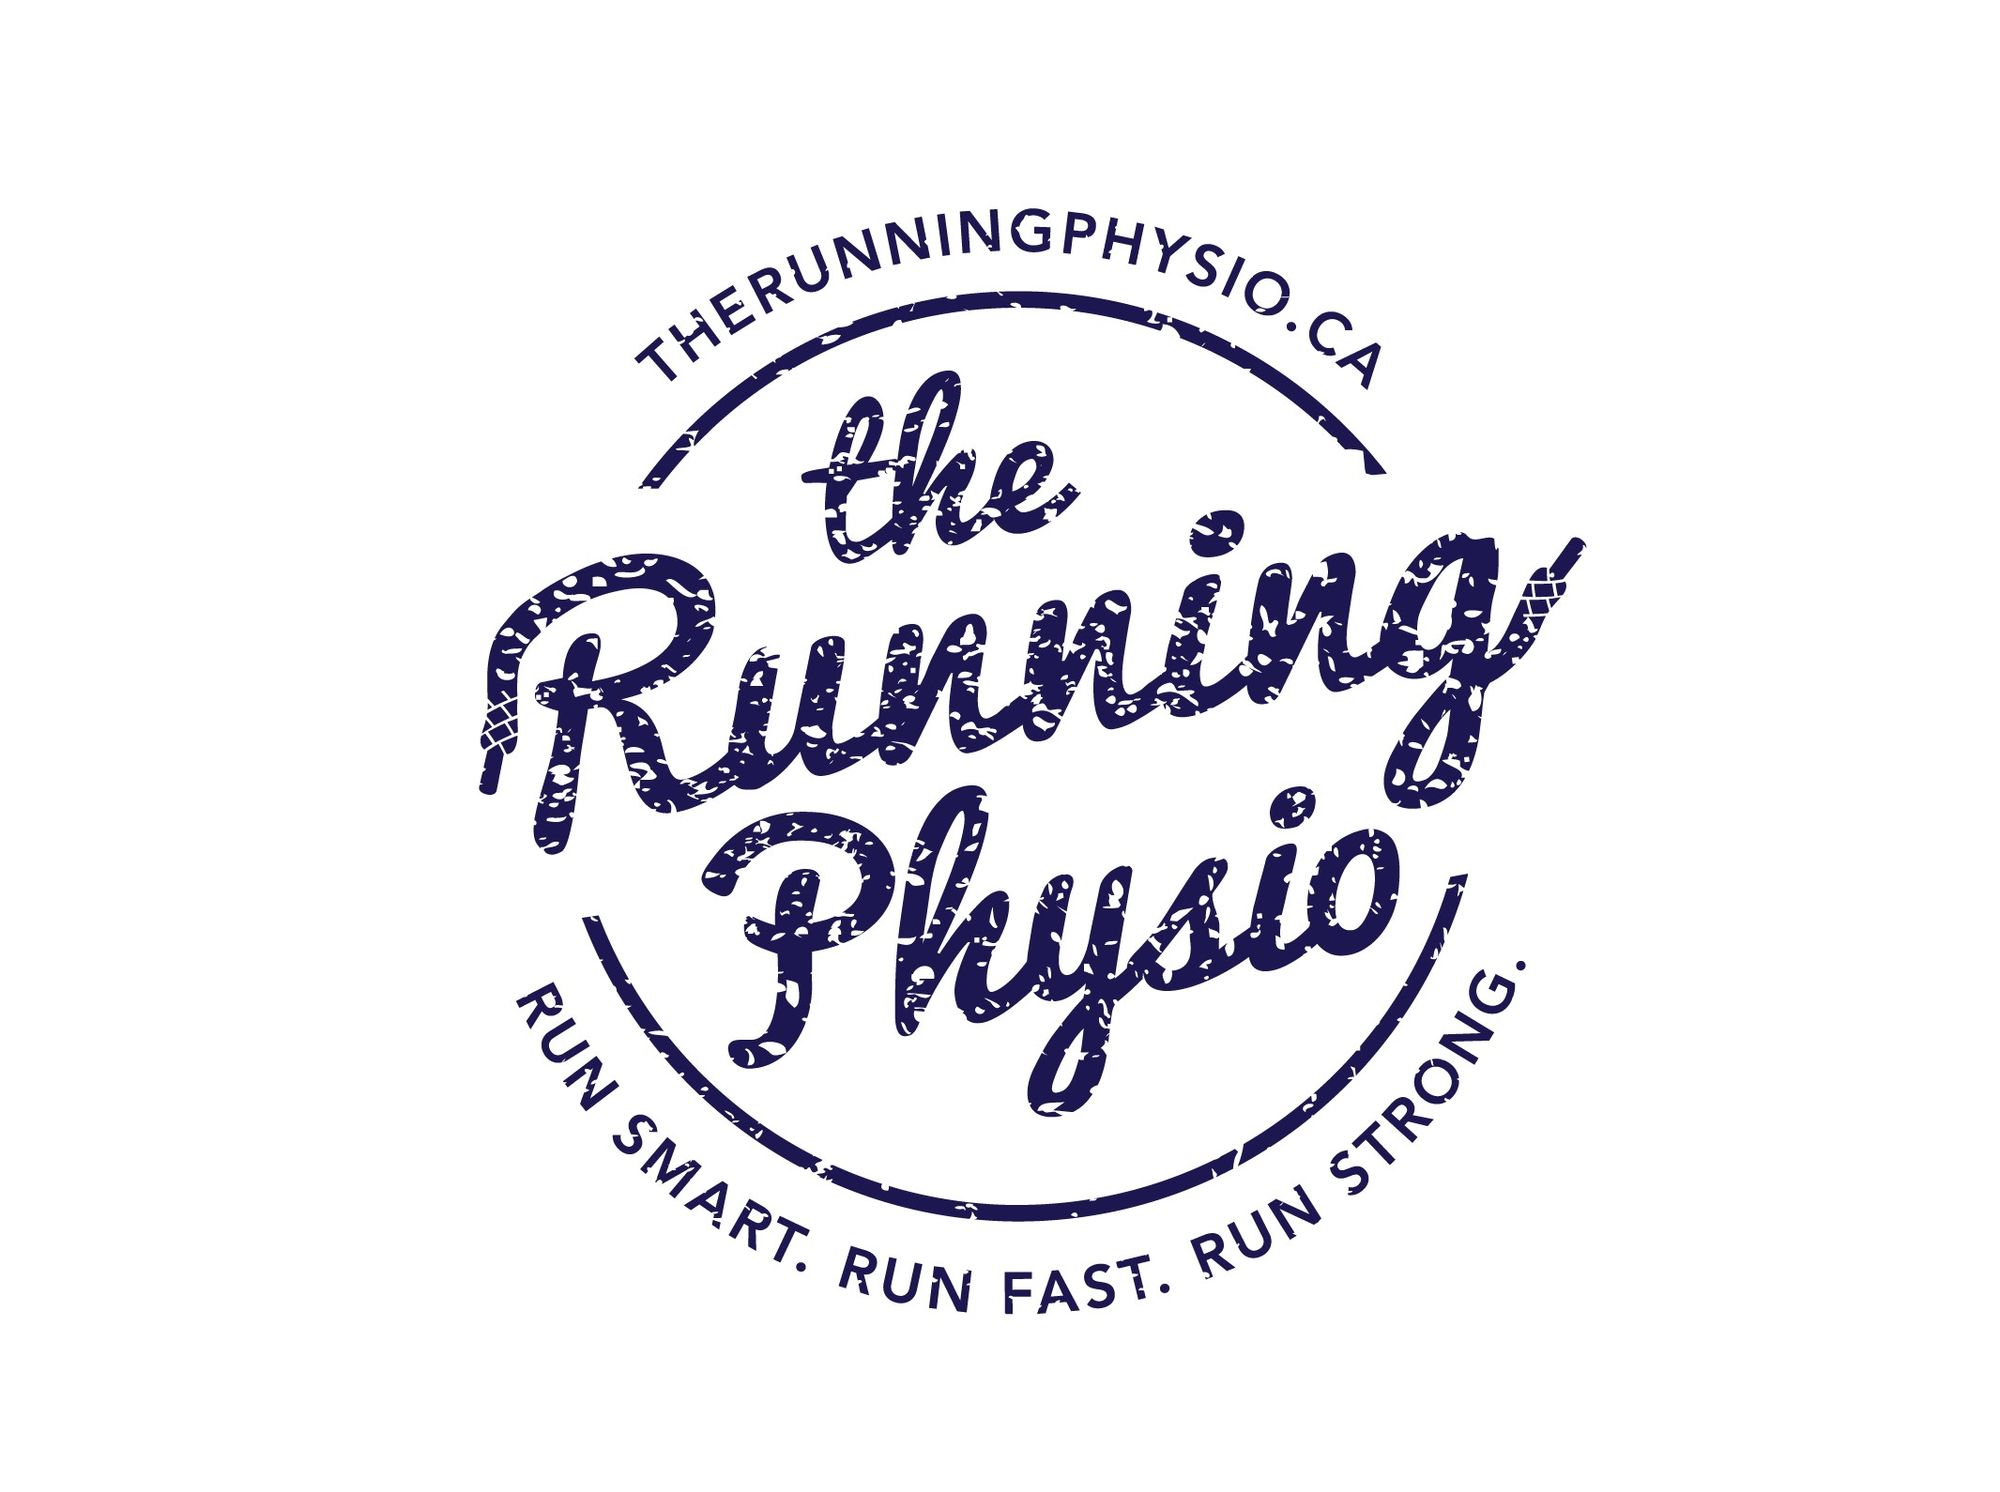 Toronto's Premier Running Clinic - The Running Physio